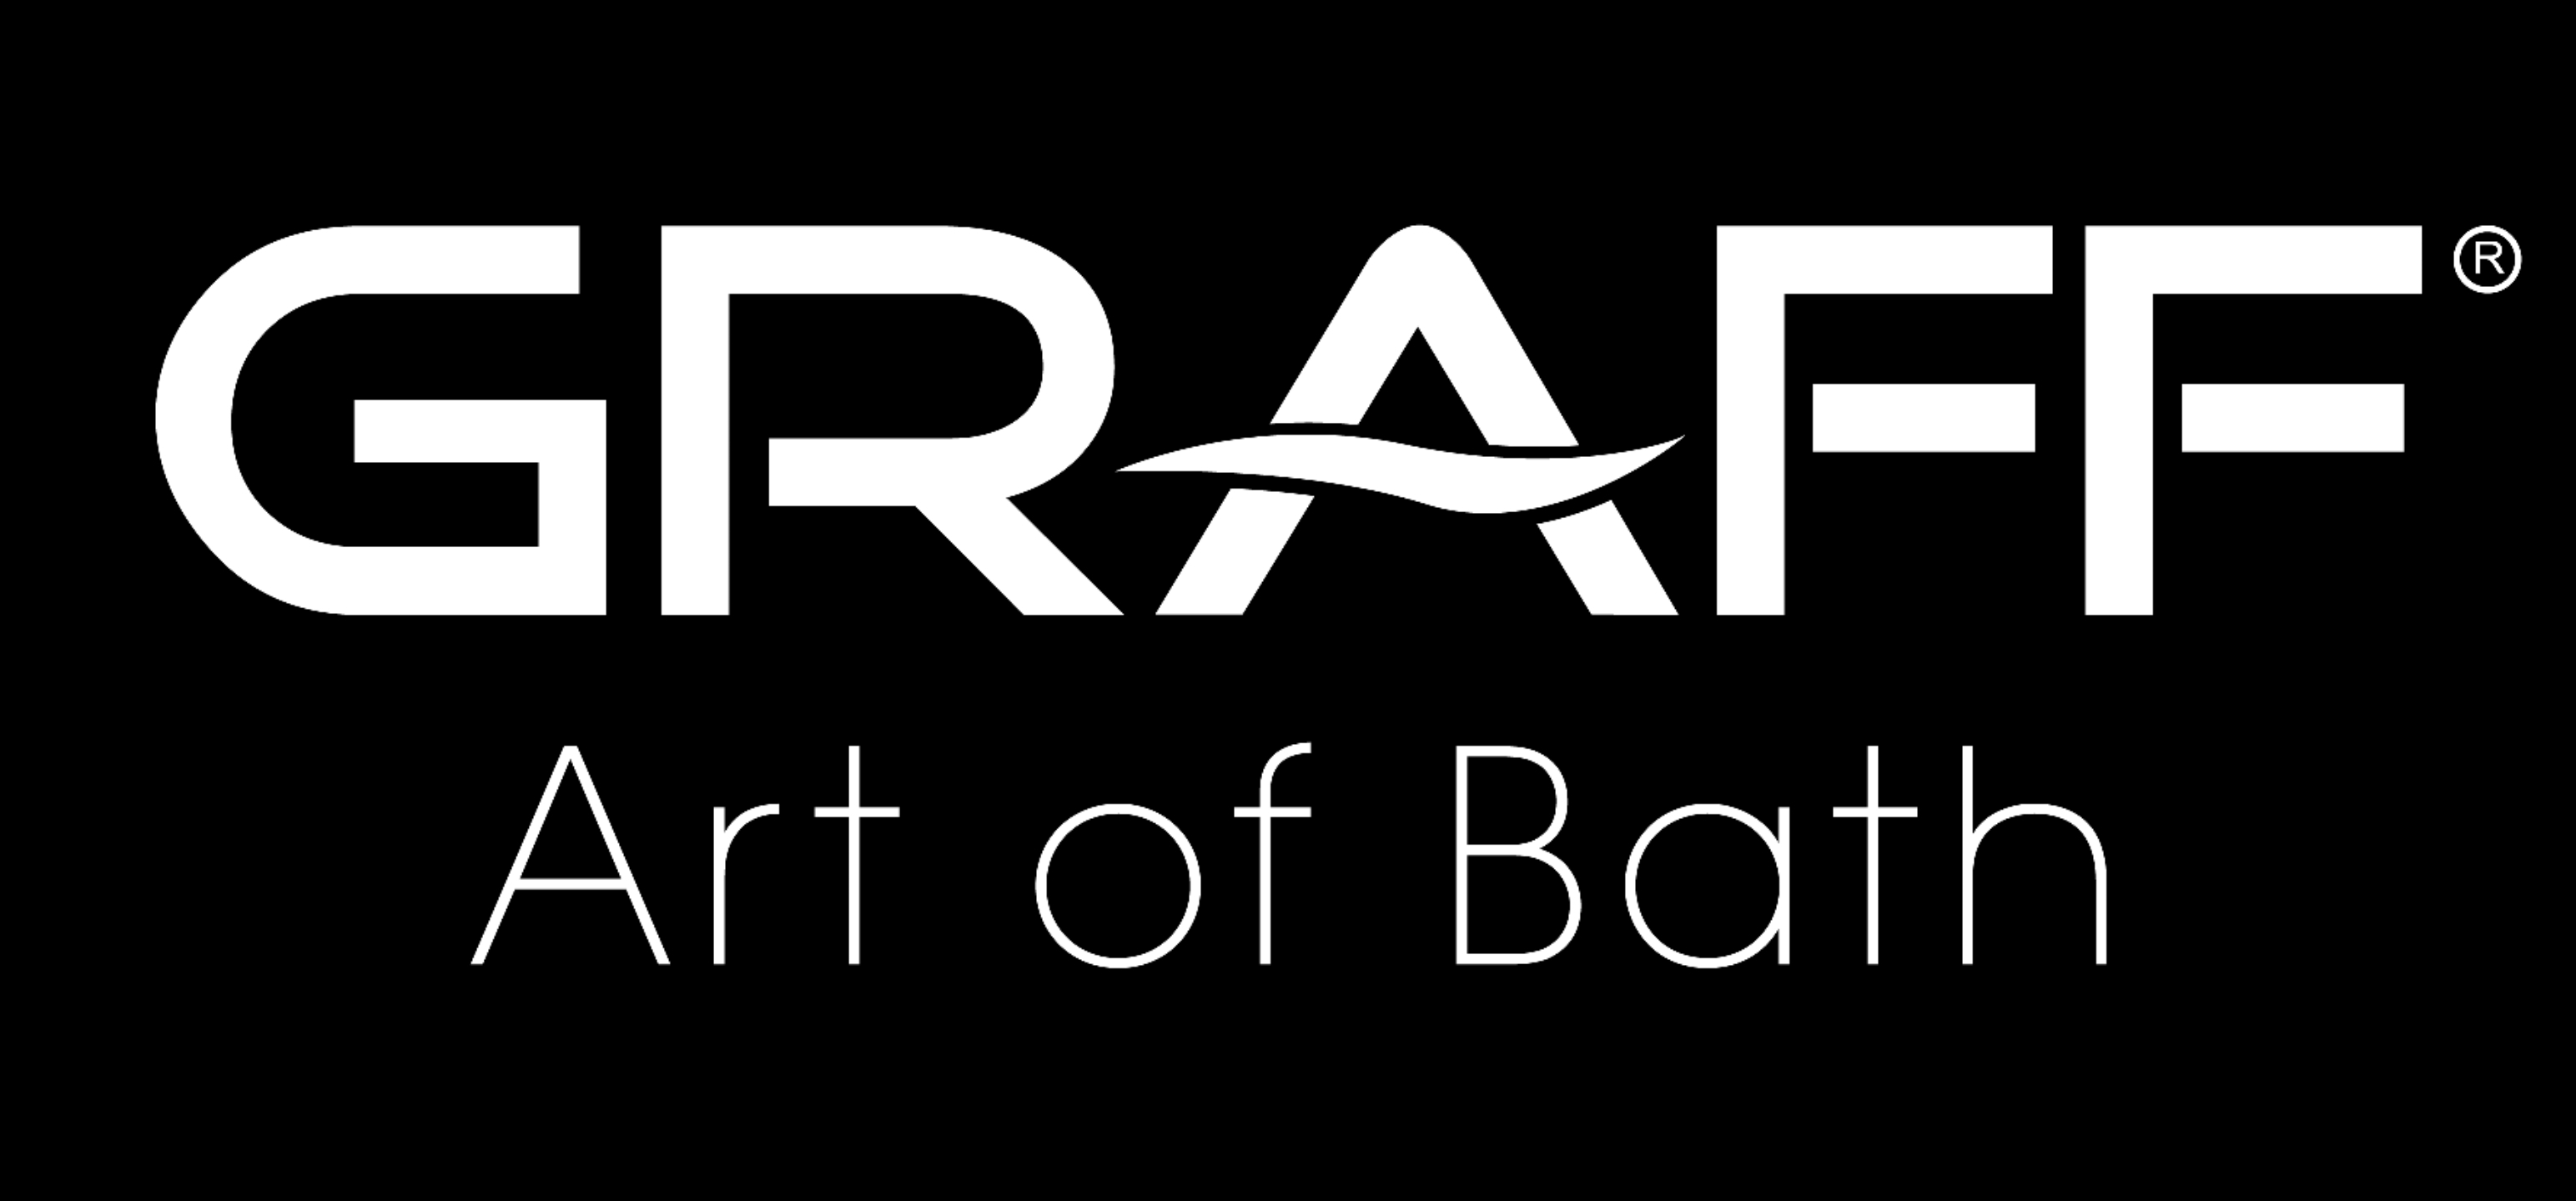 graff design bath logo